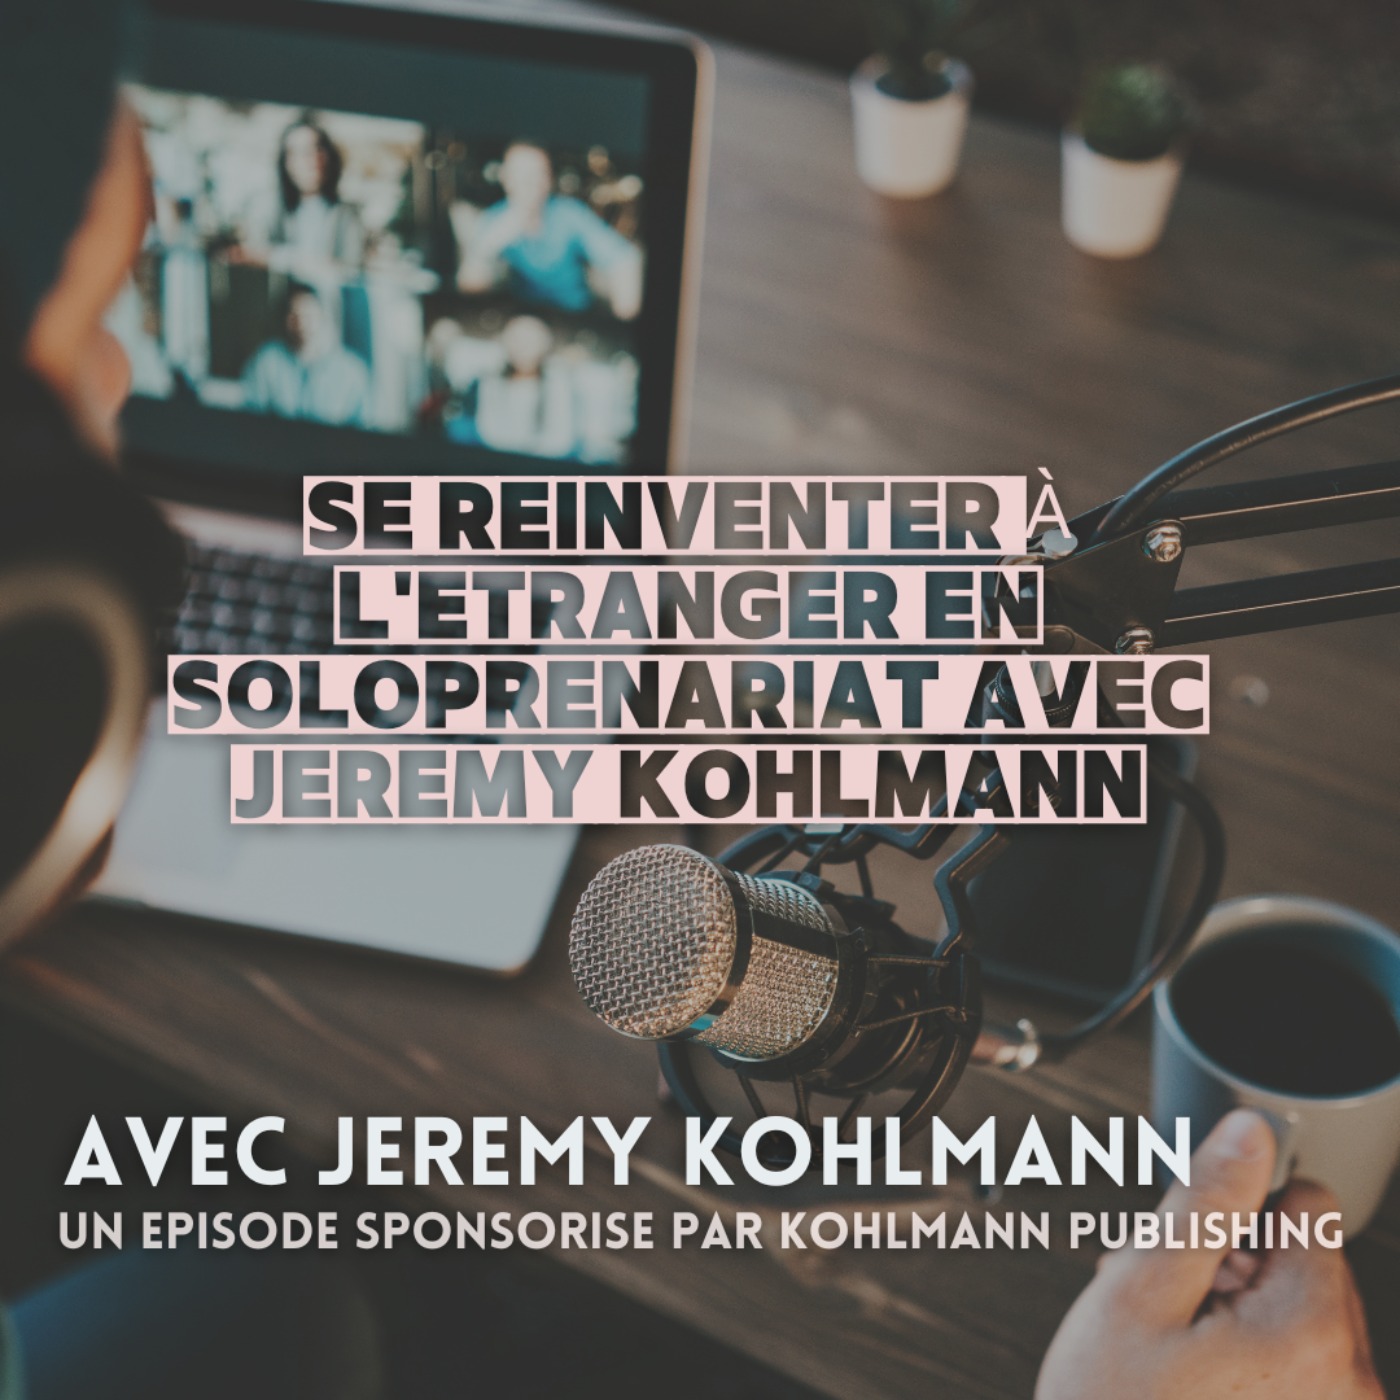 Episode sponsorisé : se réinventer à l'étranger en soloprenariat avec Jeremy Kohlmann